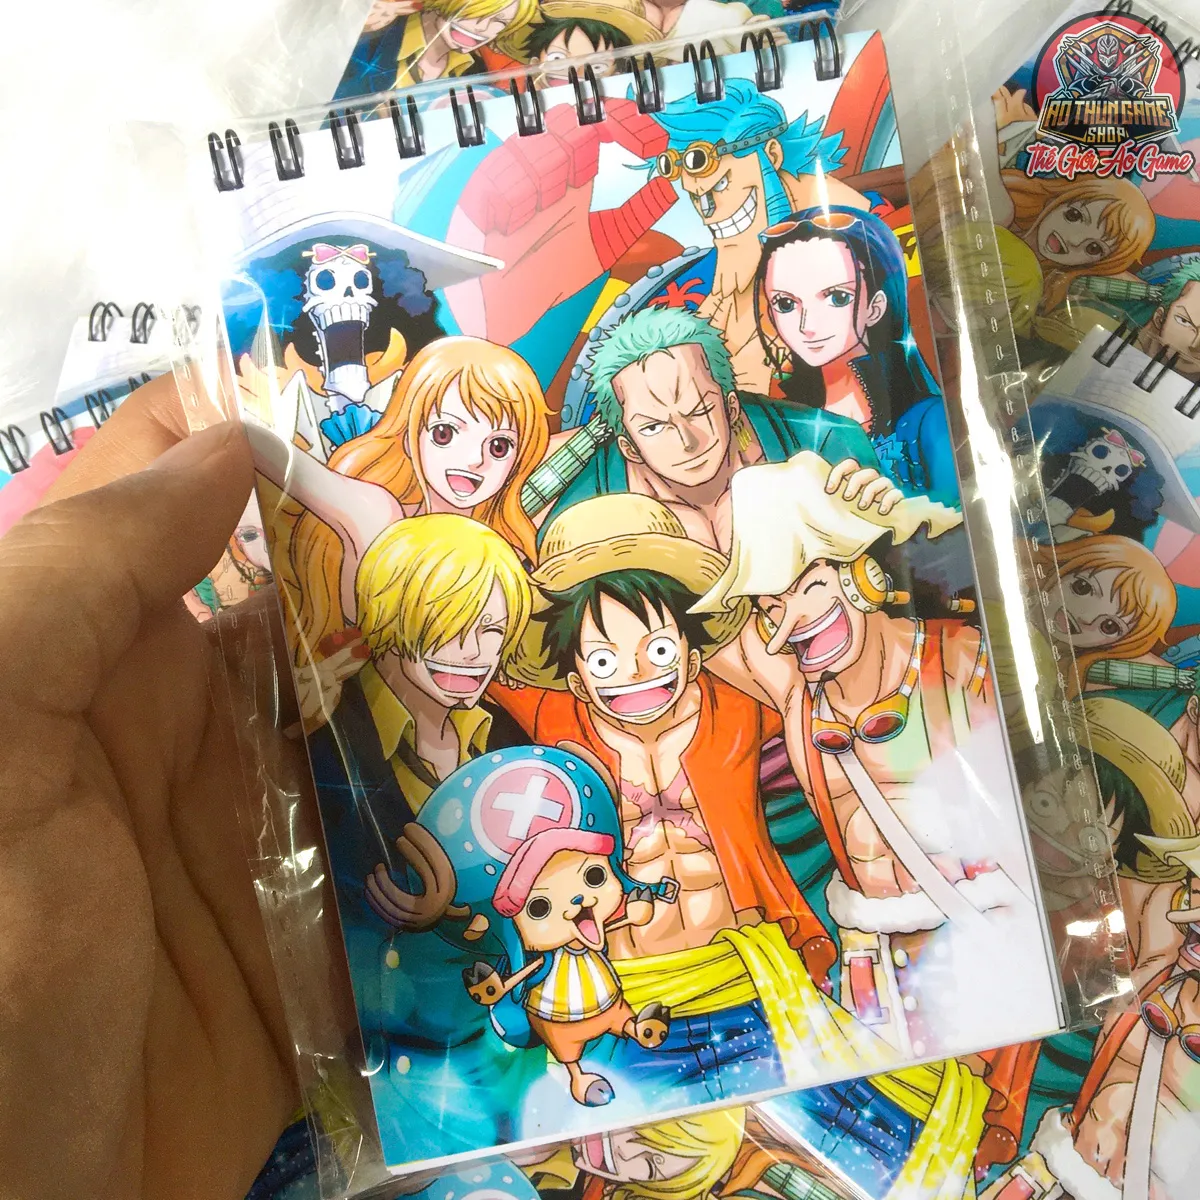 Sổ tay One Piece là một trong những sản phẩm không thể thiếu dành cho những fan hâm mộ của bộ truyện tranh này. Bạn sẽ được tìm hiểu thêm về các nhân vật, địa điểm và các cuộc phiêu lưu trong thế giới One Piece. Với các hình ảnh đẹp mắt và thông tin đầy đủ, sổ tay One Piece chắc chắn sẽ làm hài lòng những fan hâm mộ khó tính nhất.